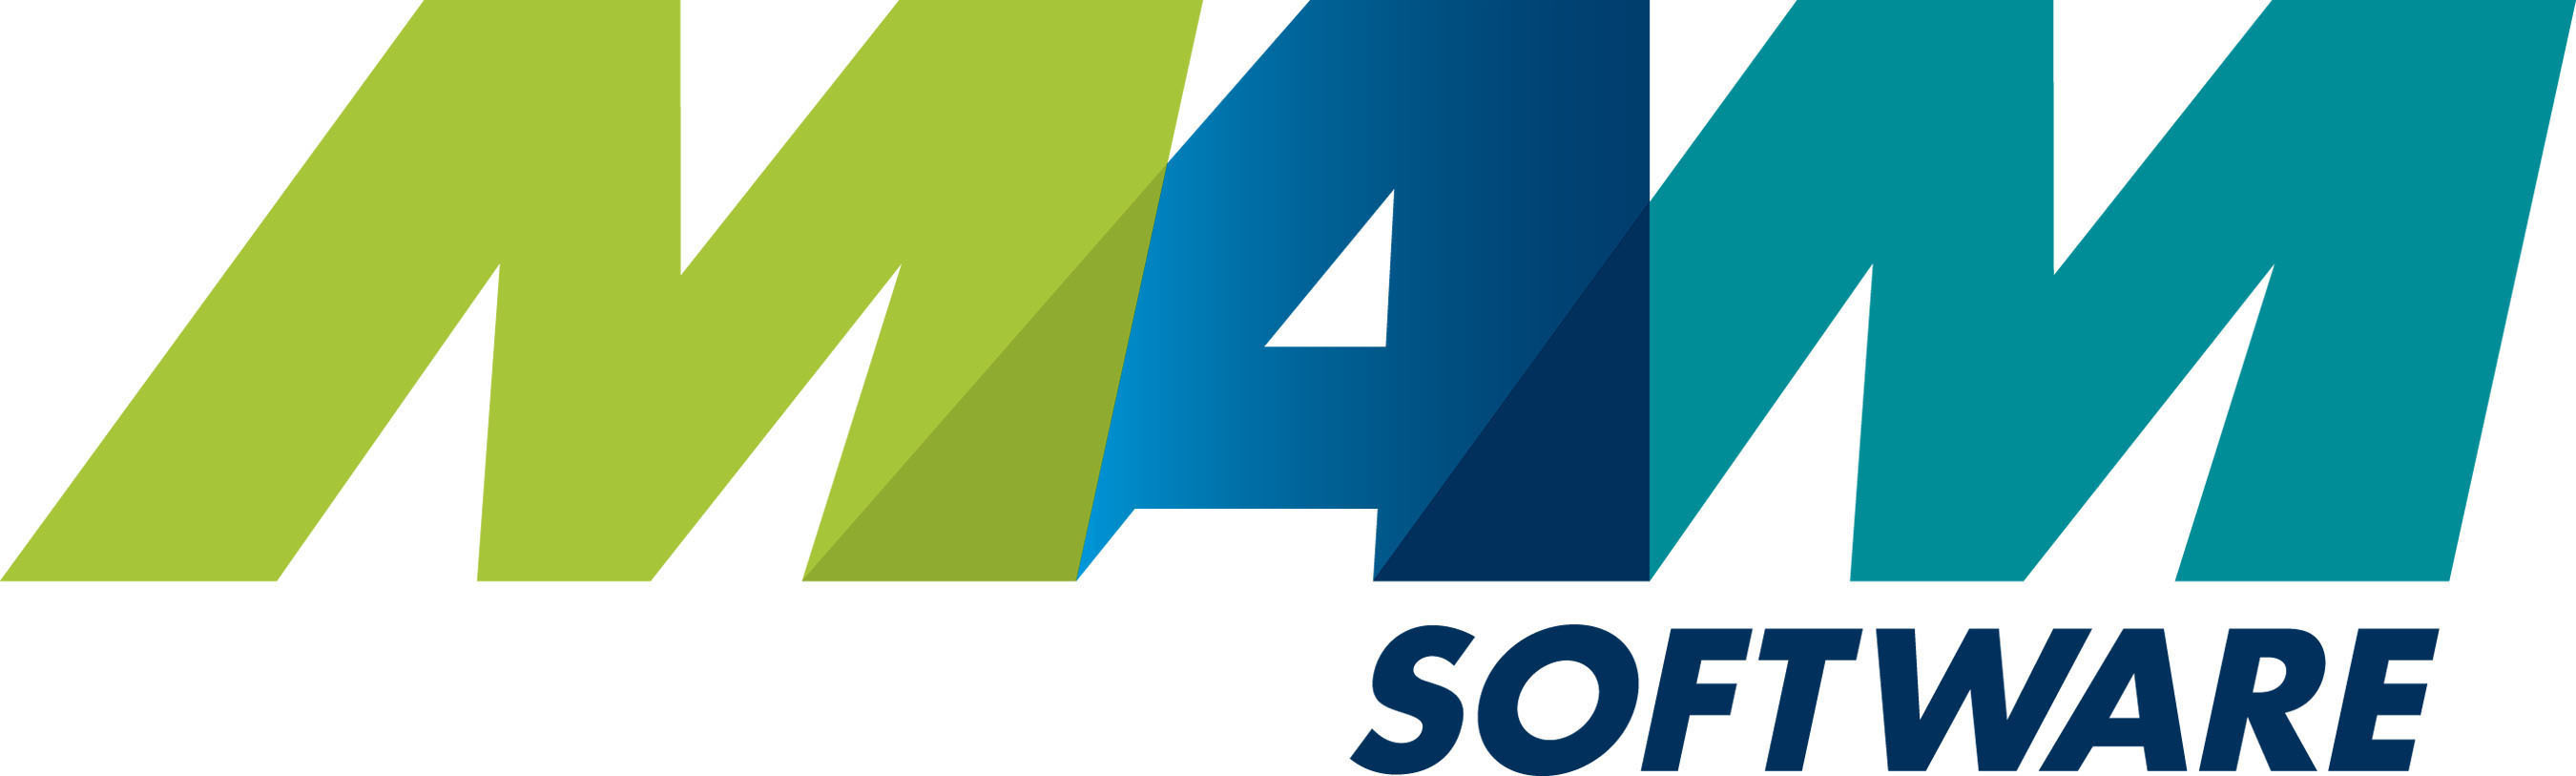 MAM Software Group, Inc. logo